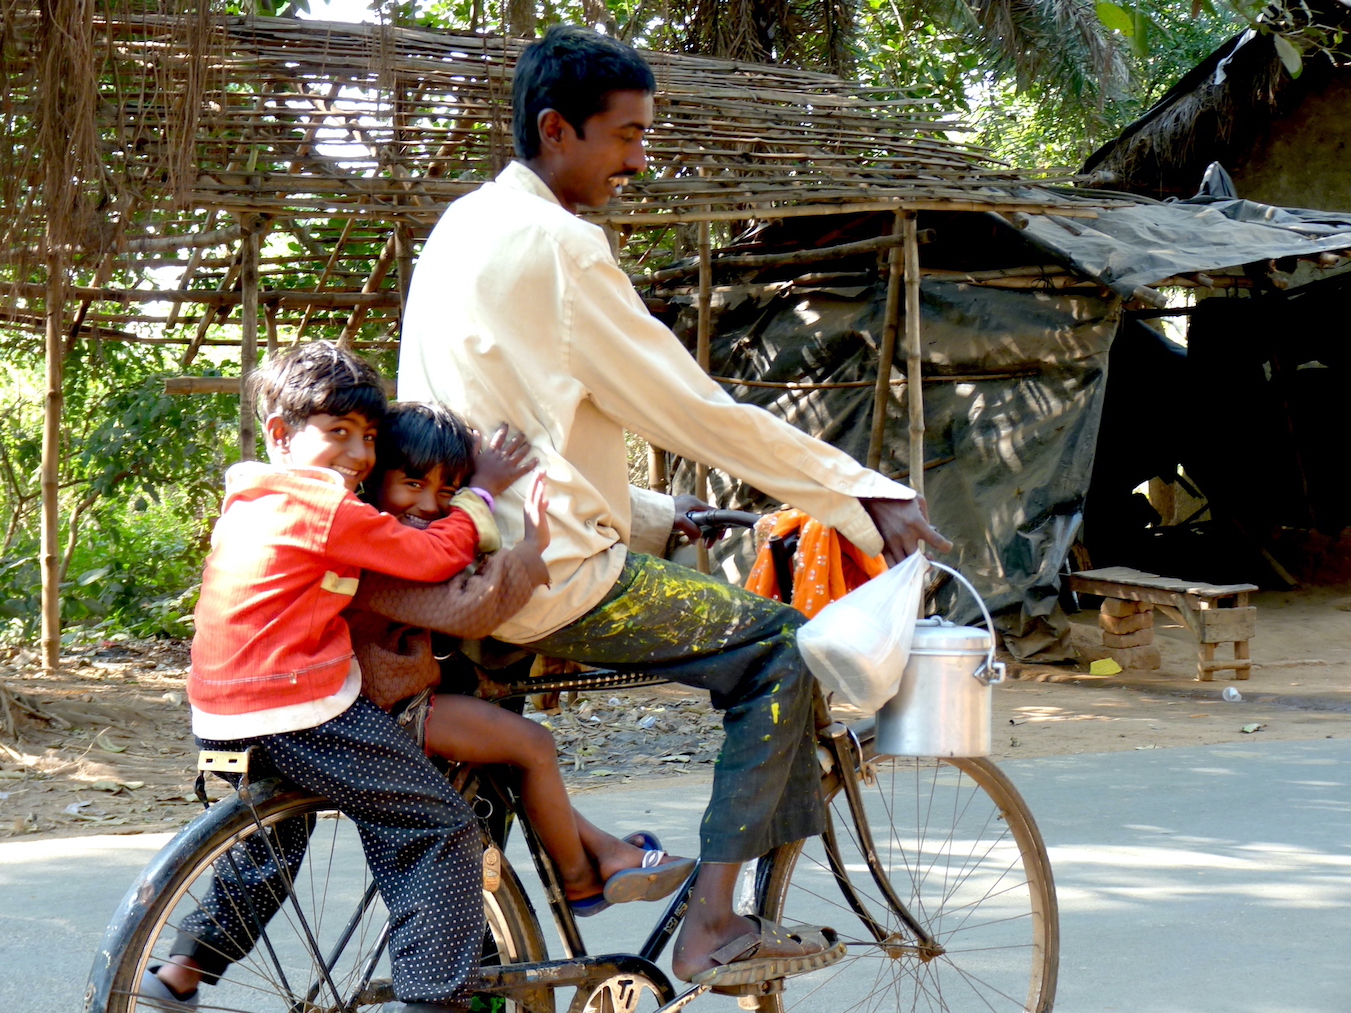 Photographie d'une scène quotidienne du marché de Shyambati, ou j'avais ma maison à Santinitetan: un père transporte ses enfants au retour du marché. Bengal Occidental, Inde, le 19 janvier 2011 © Samuel Socquet